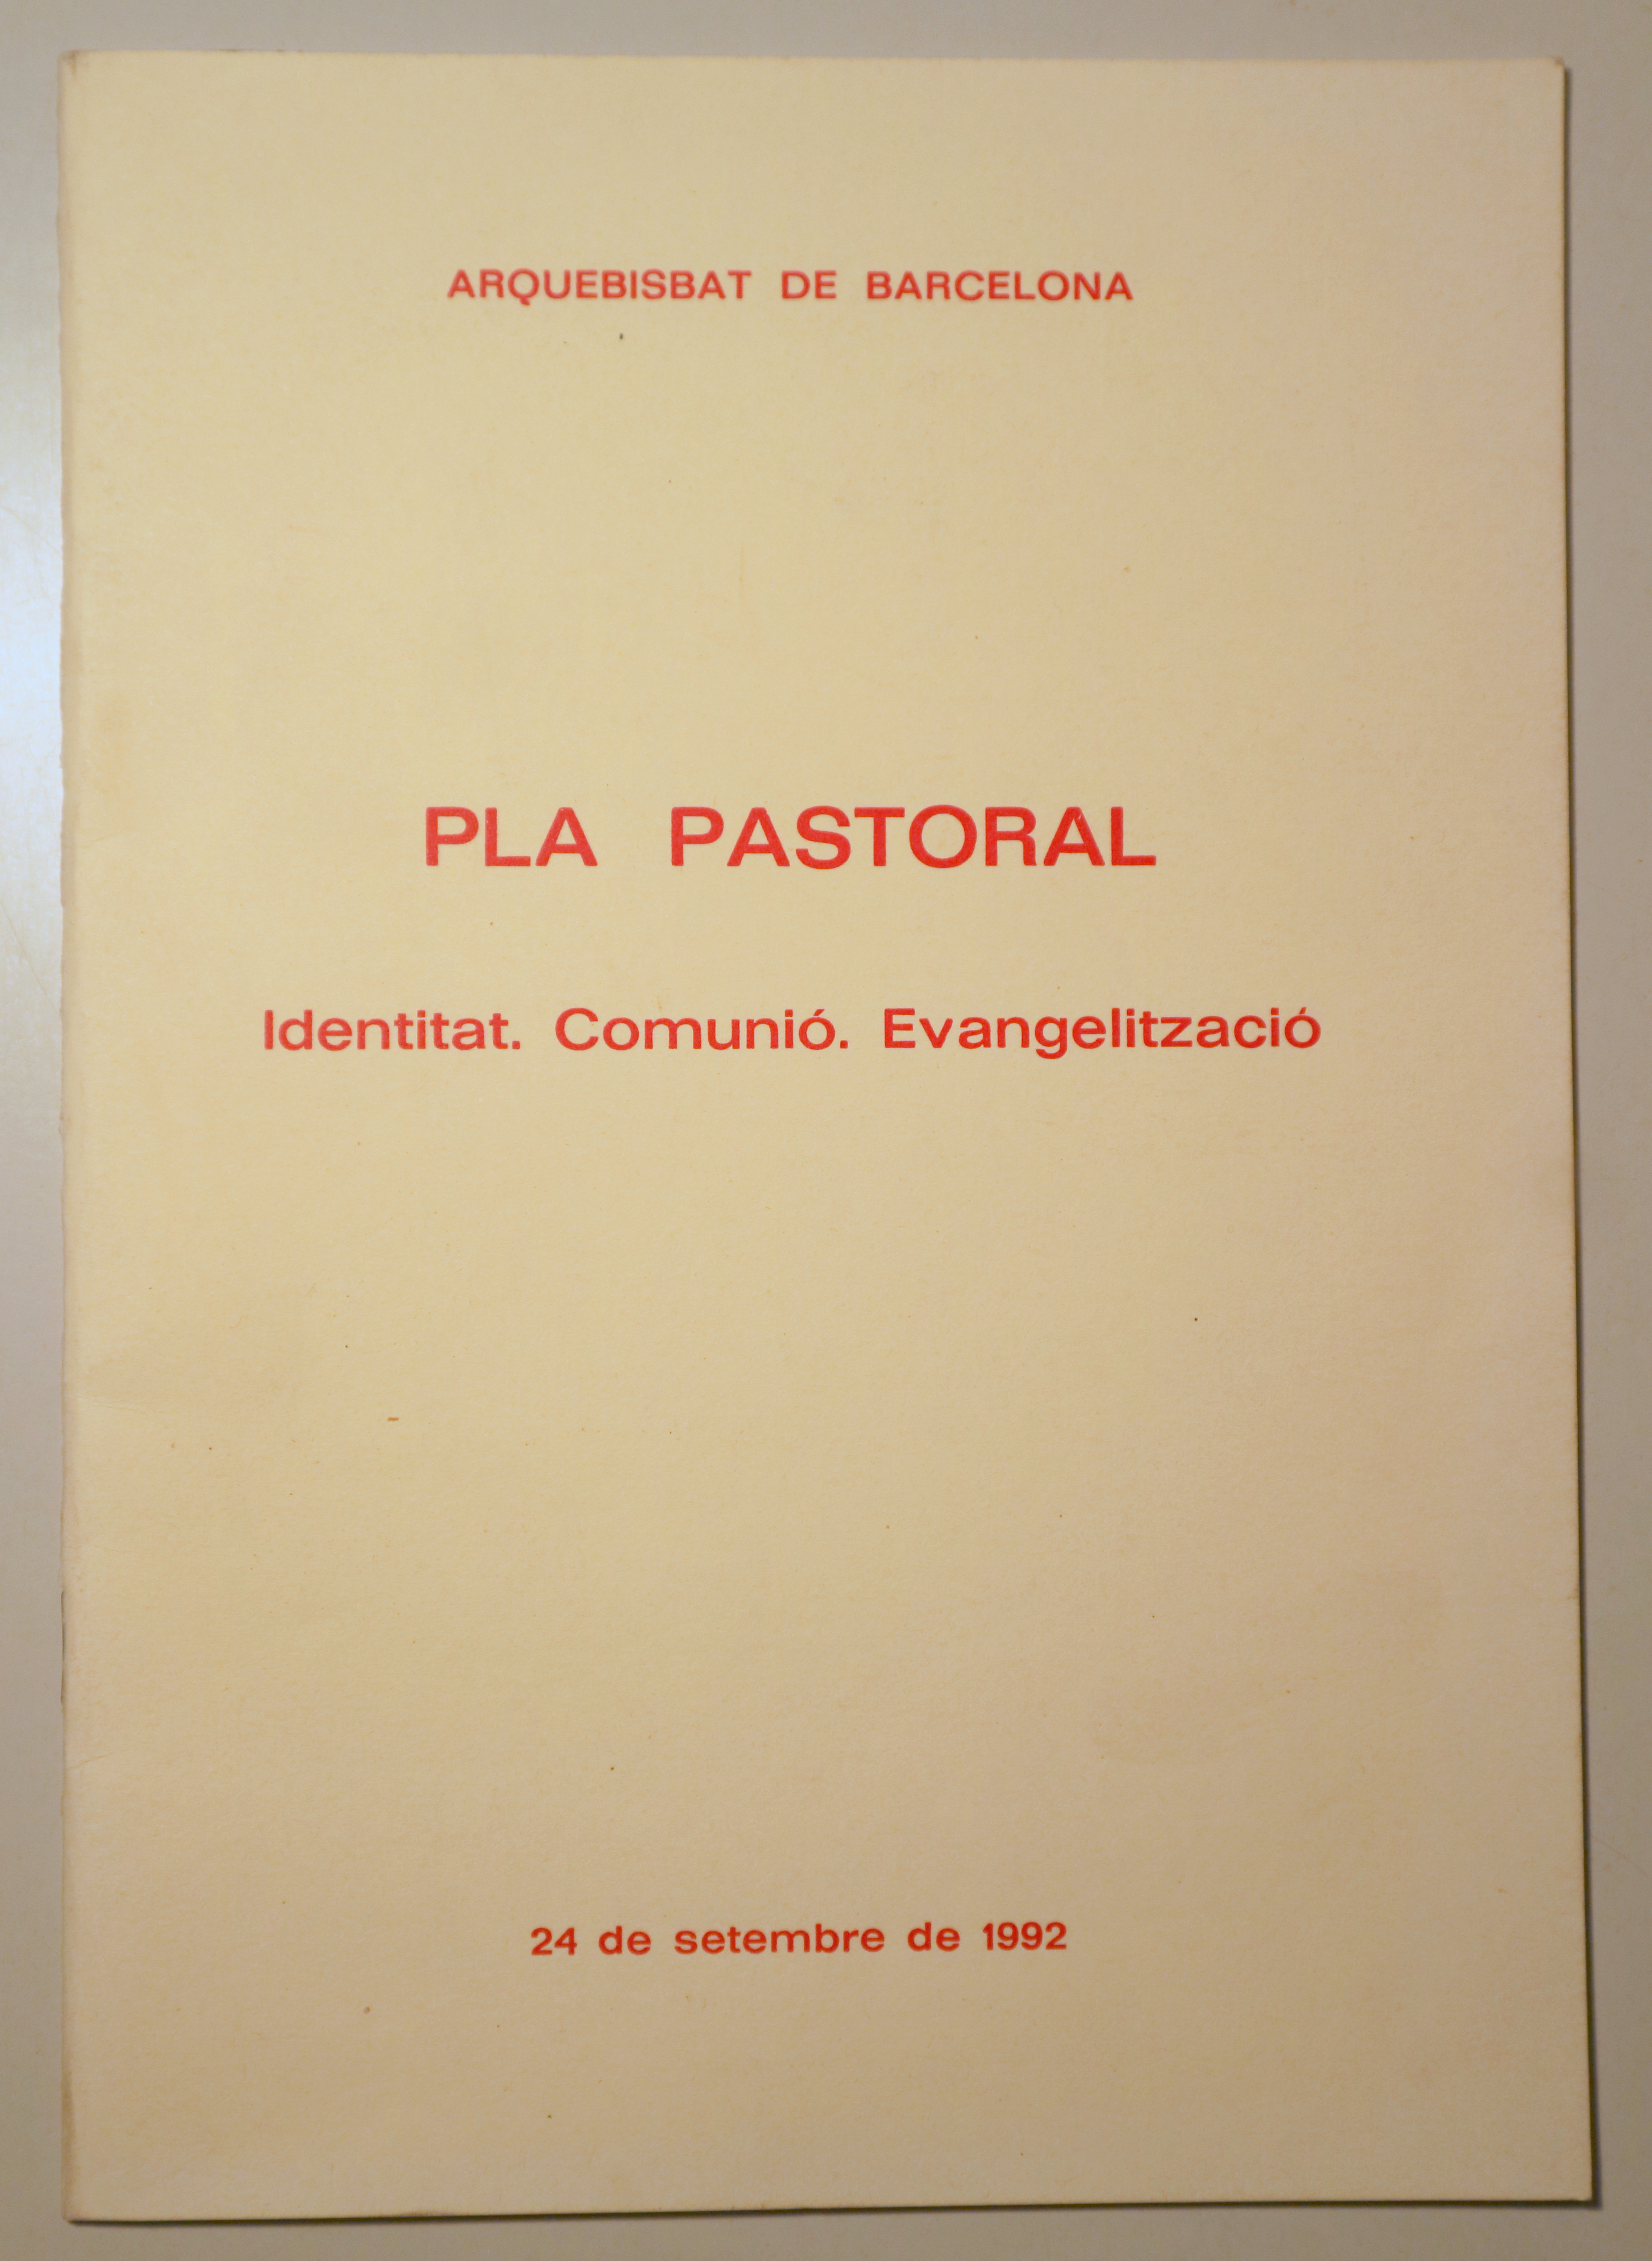 PLA PASTORAL. Identitat. Comunió. Evangelització - Barcelona 1992